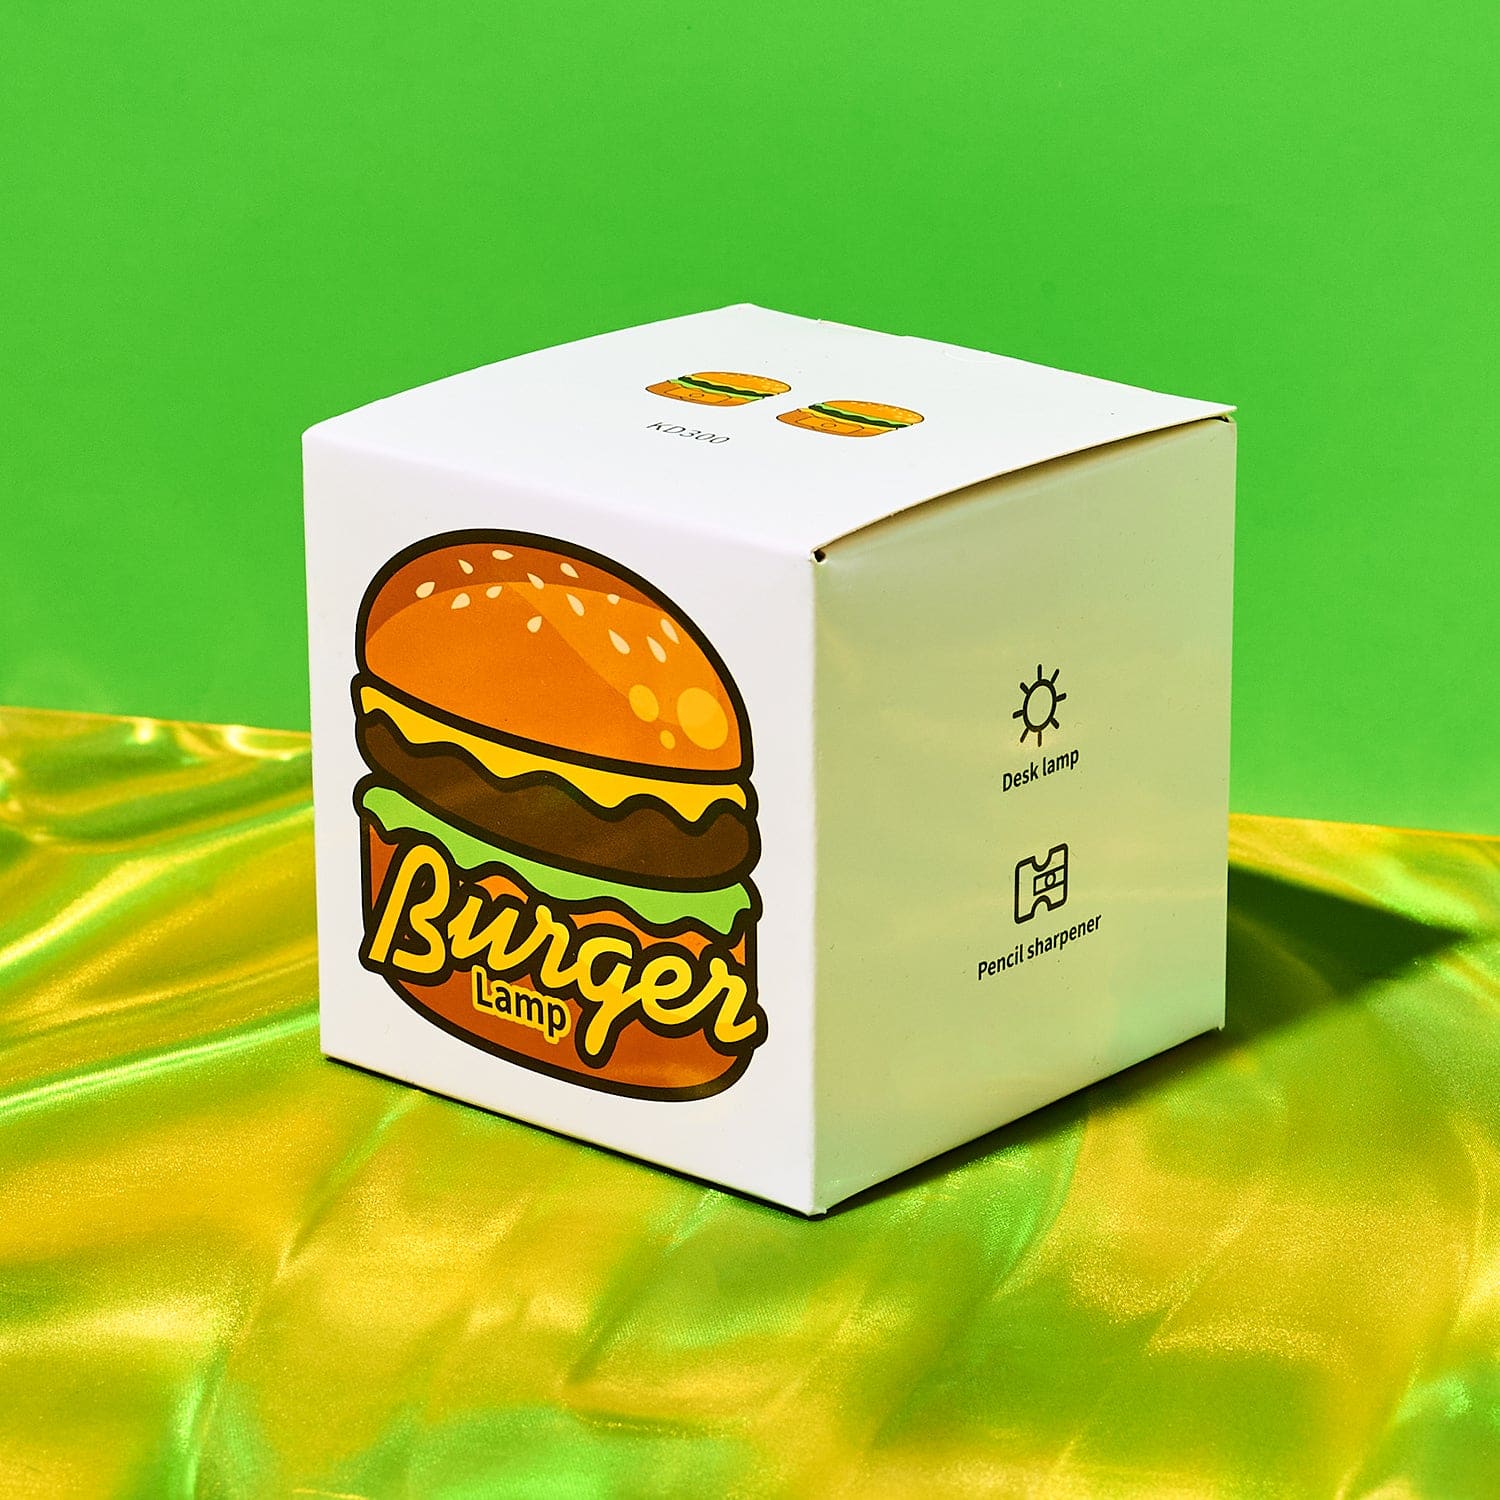 Burger Lamp & Pencil Sharpener Accent Lamp - Boxed